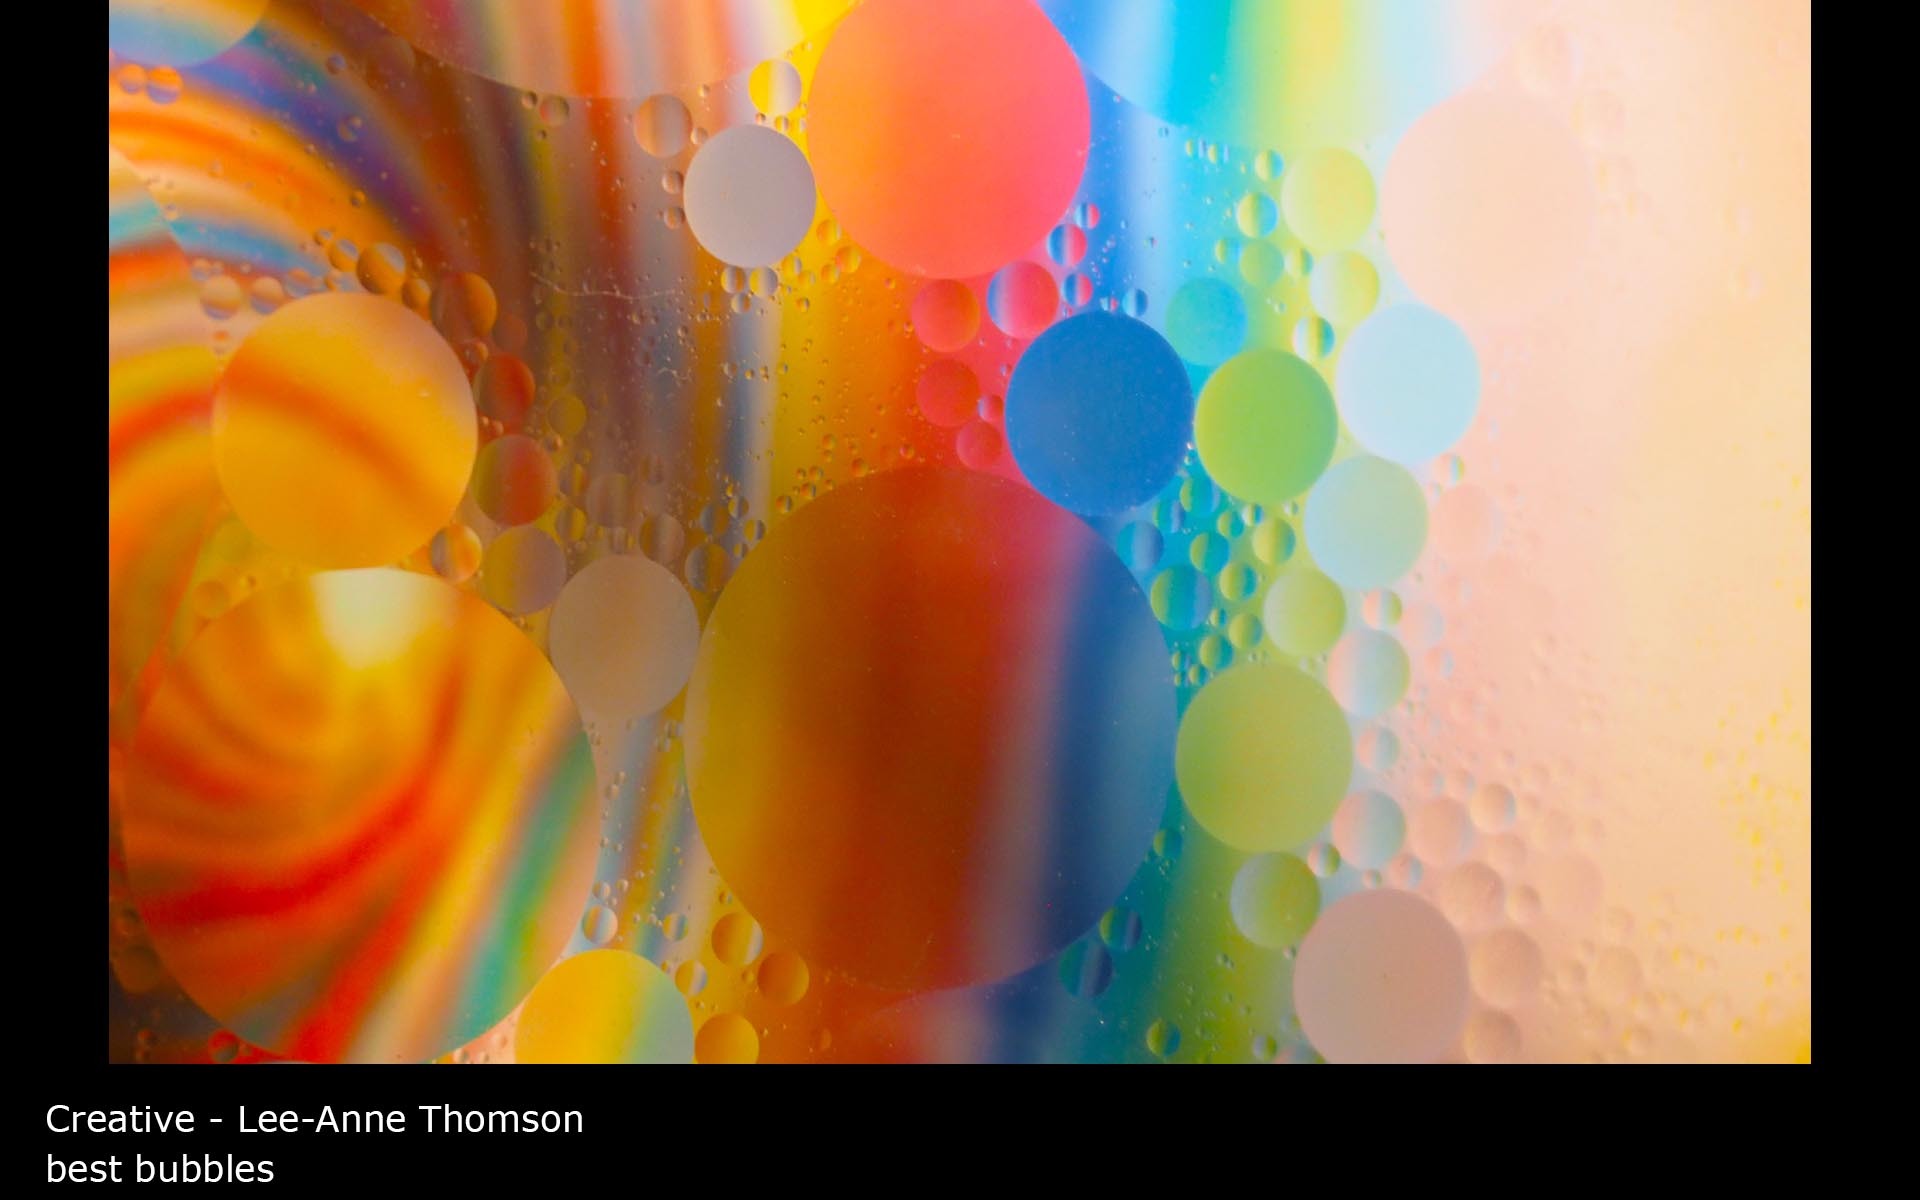 best bubbles - Lee-Anne Thomson